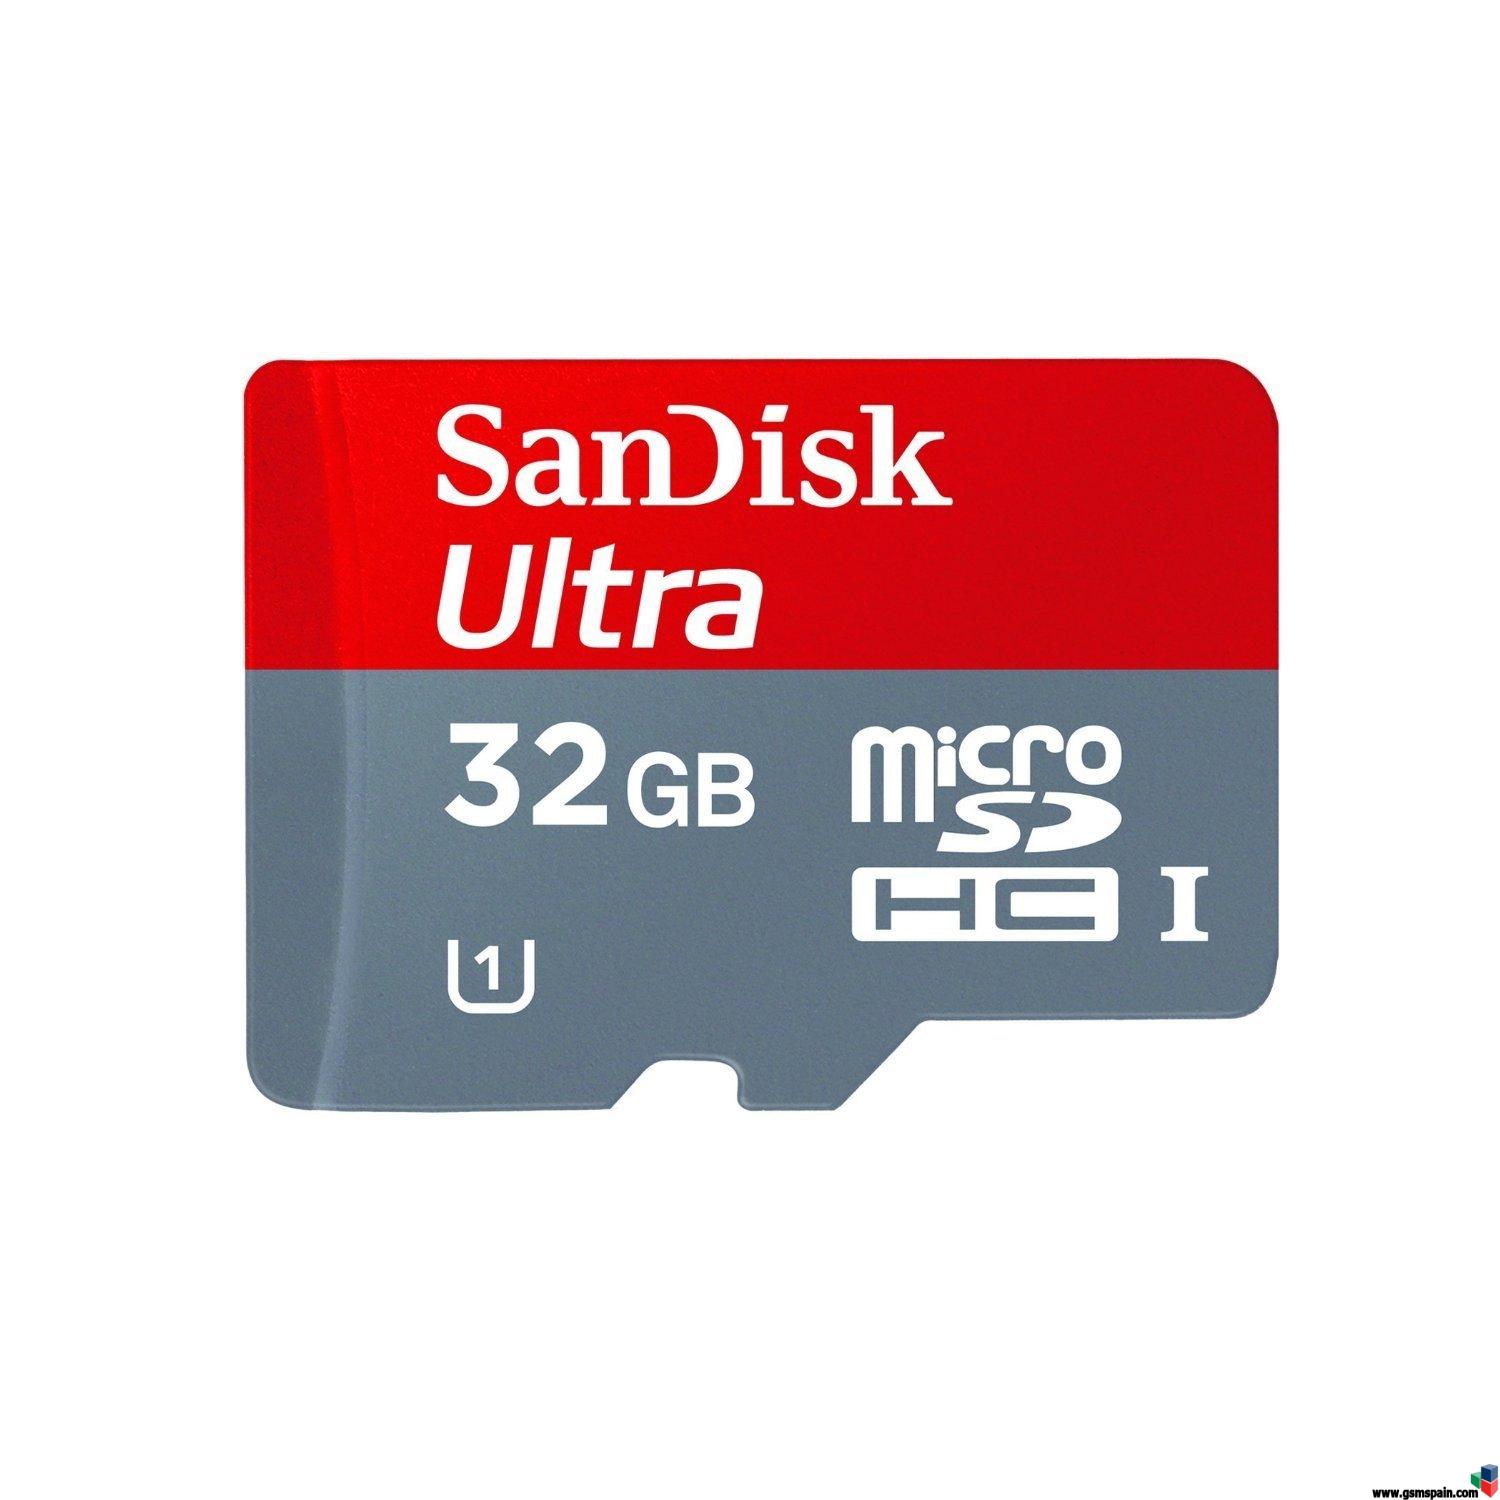 [VENDO] MicroSDHC 32gb clase 10 SanDisk